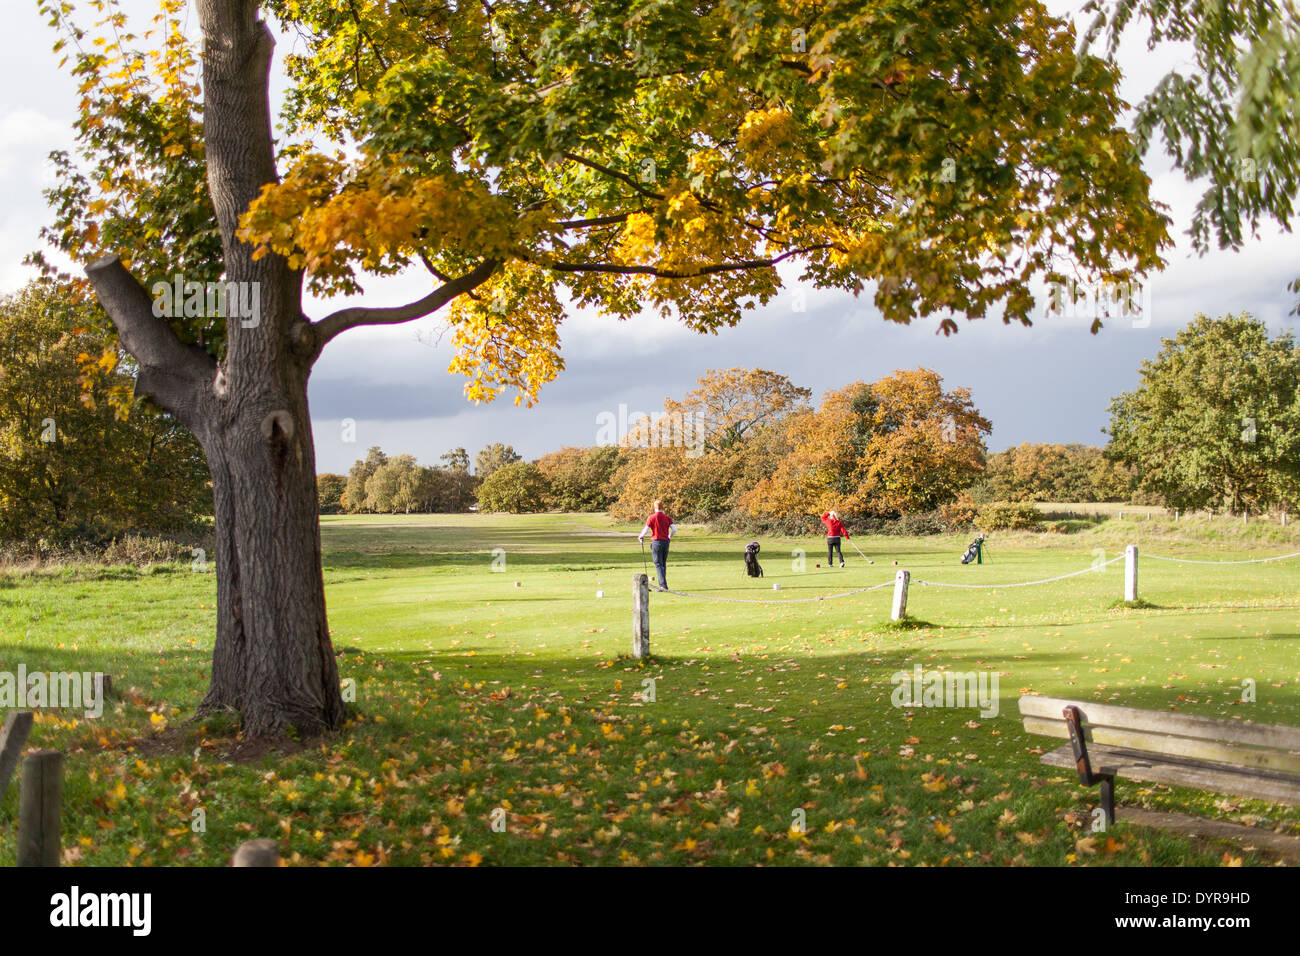 Les golfeurs jouant dans un beau paysage d'automne d'un terrain de golf dans la région de Wimbledon, Londres, UK Banque D'Images